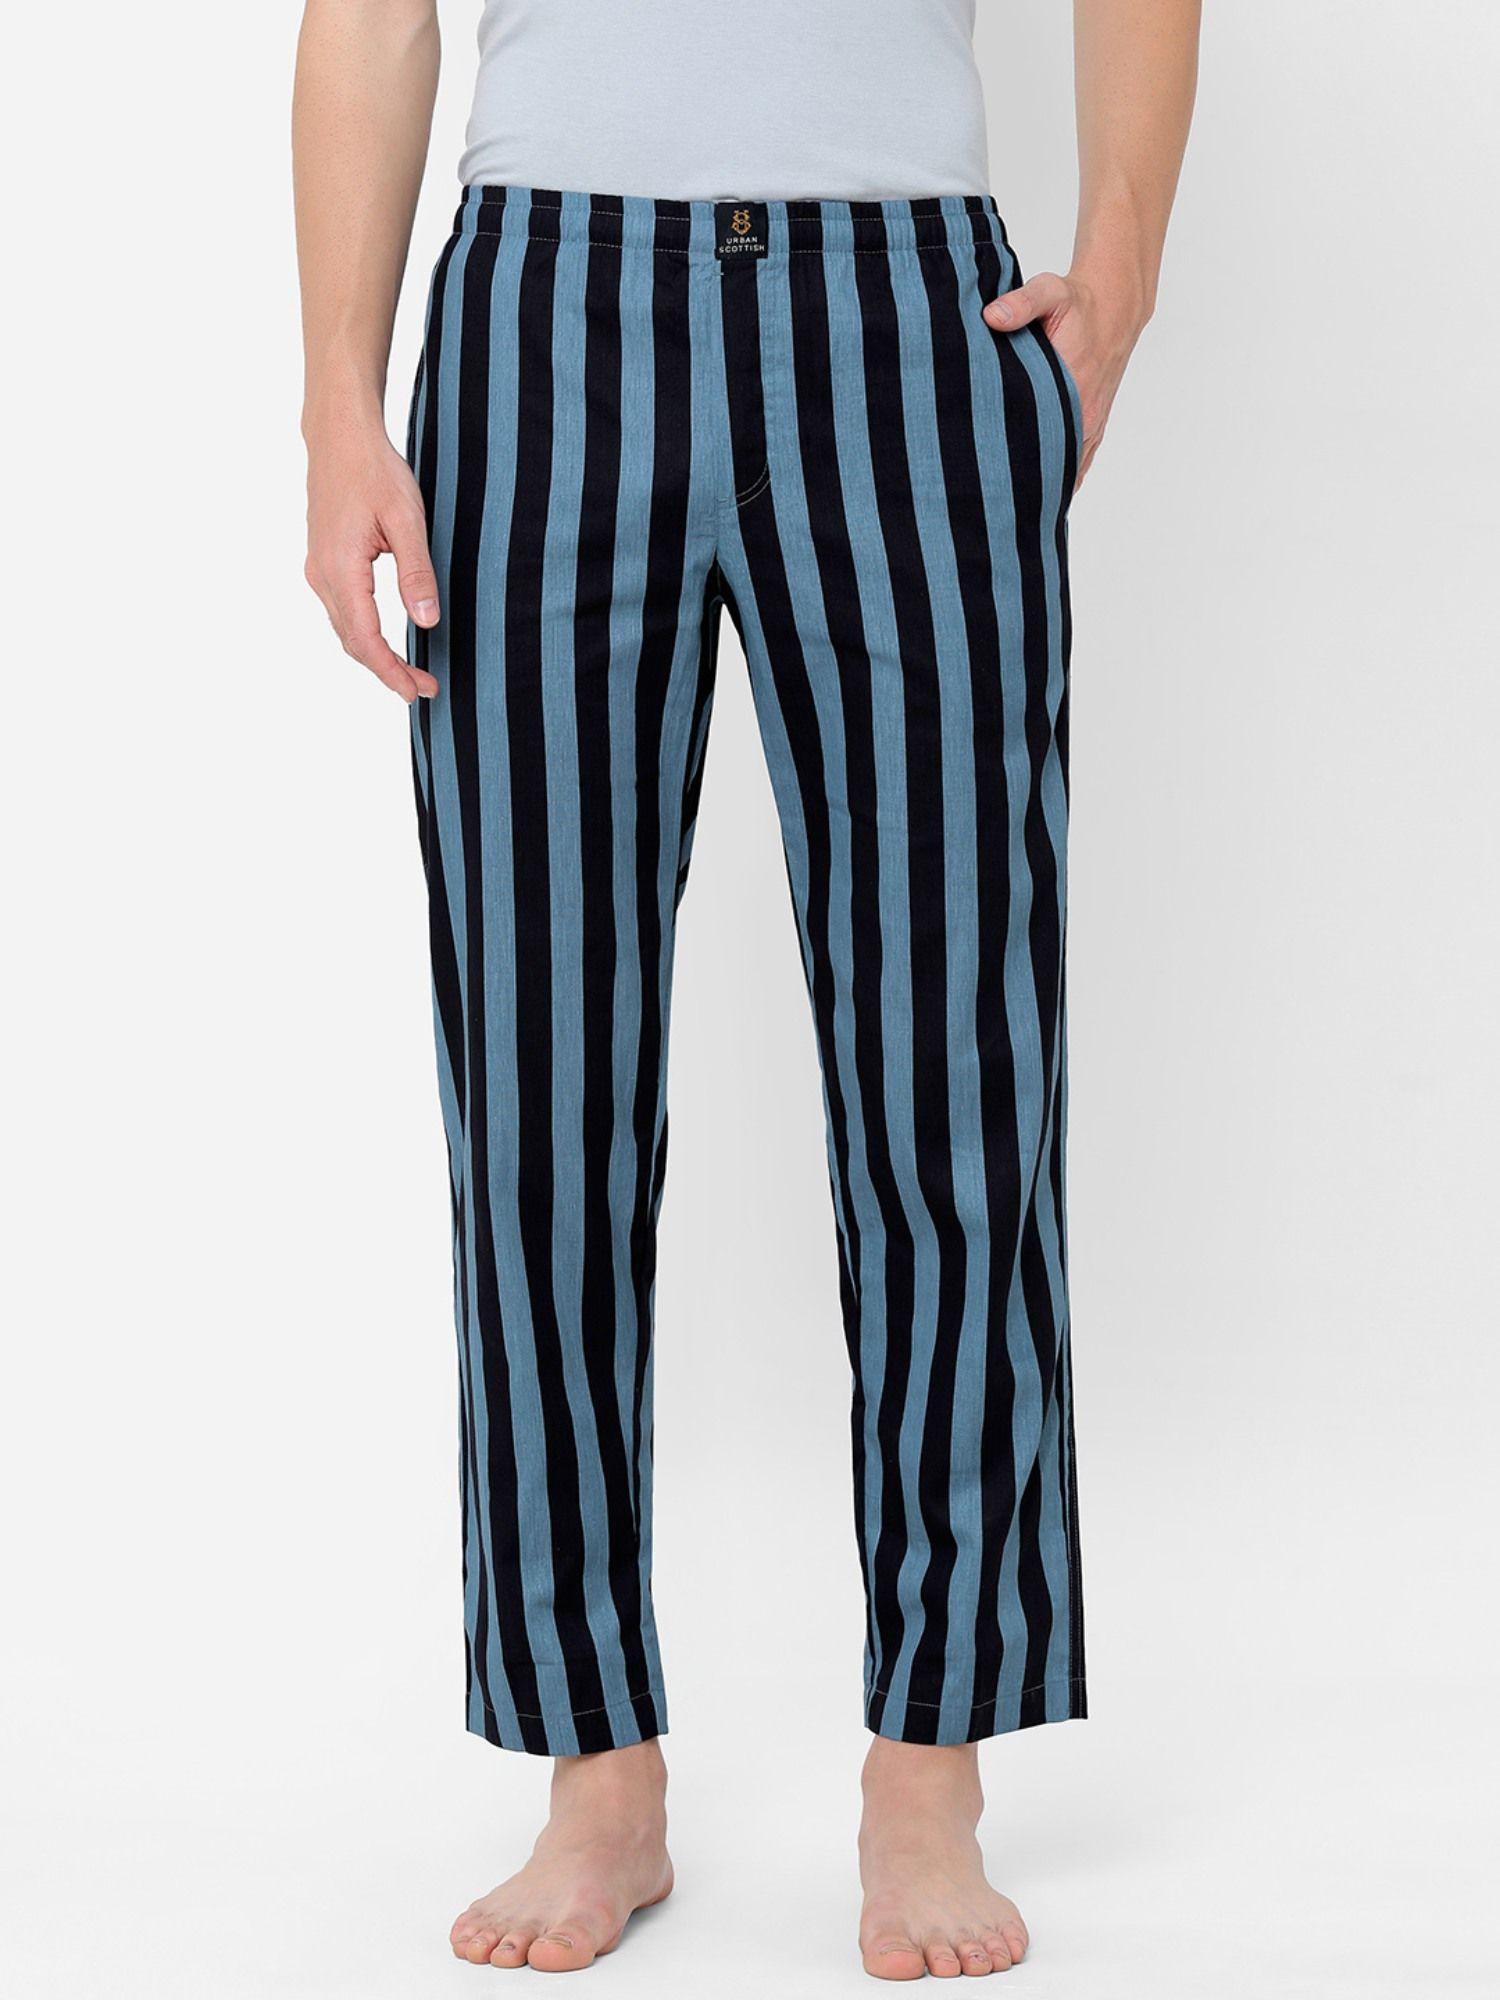 mens stripes printed cotton pyjamas multi-color